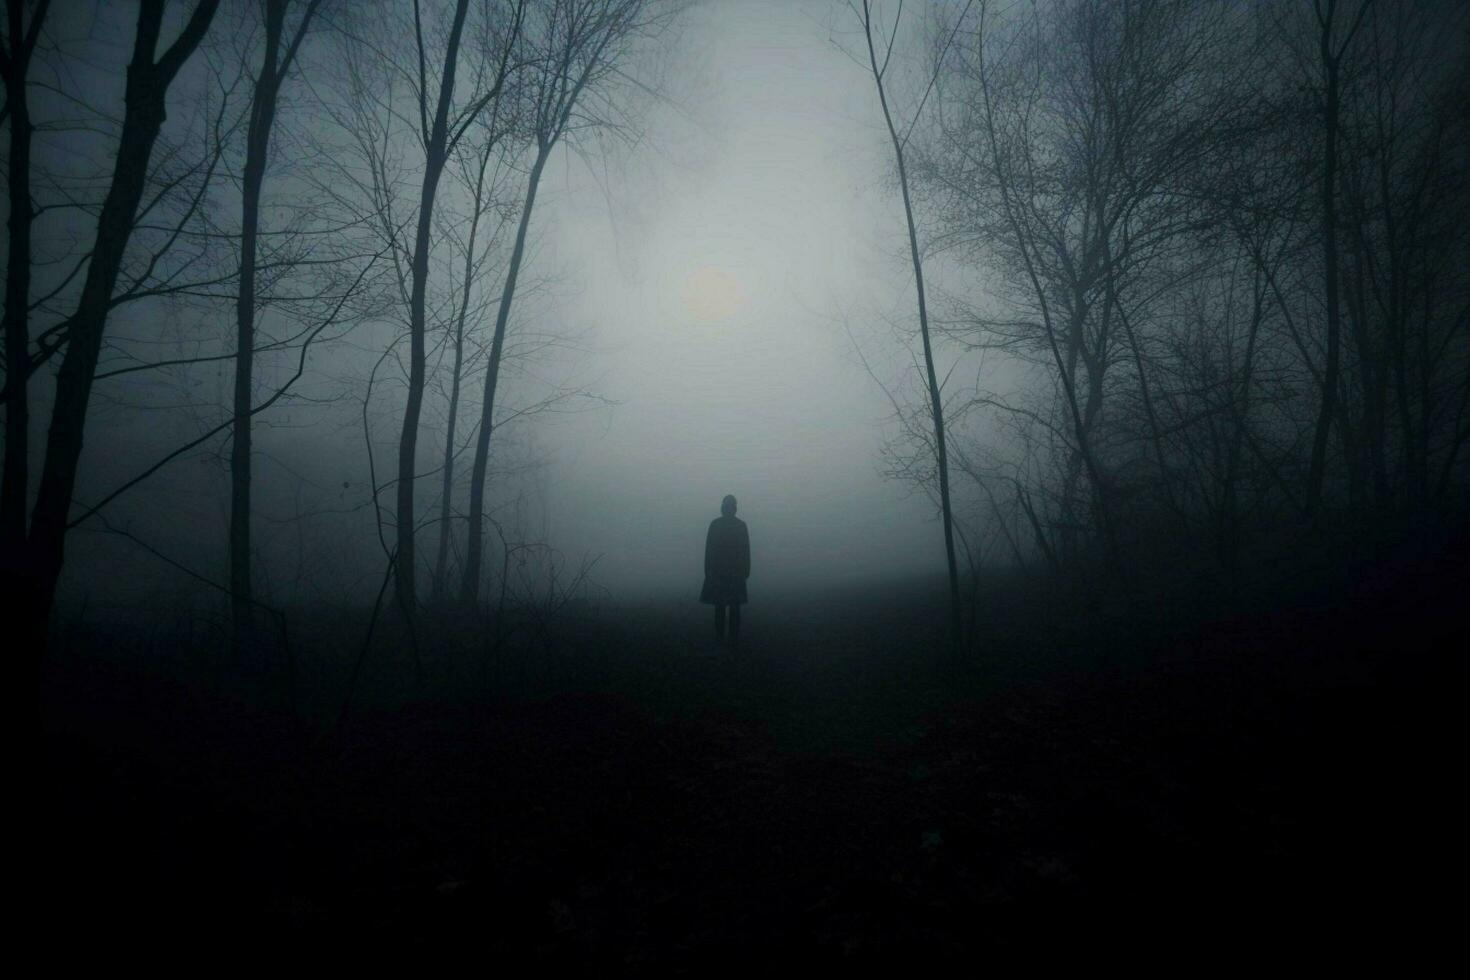 oscuro silueta en pie en niebla caminando solo foto